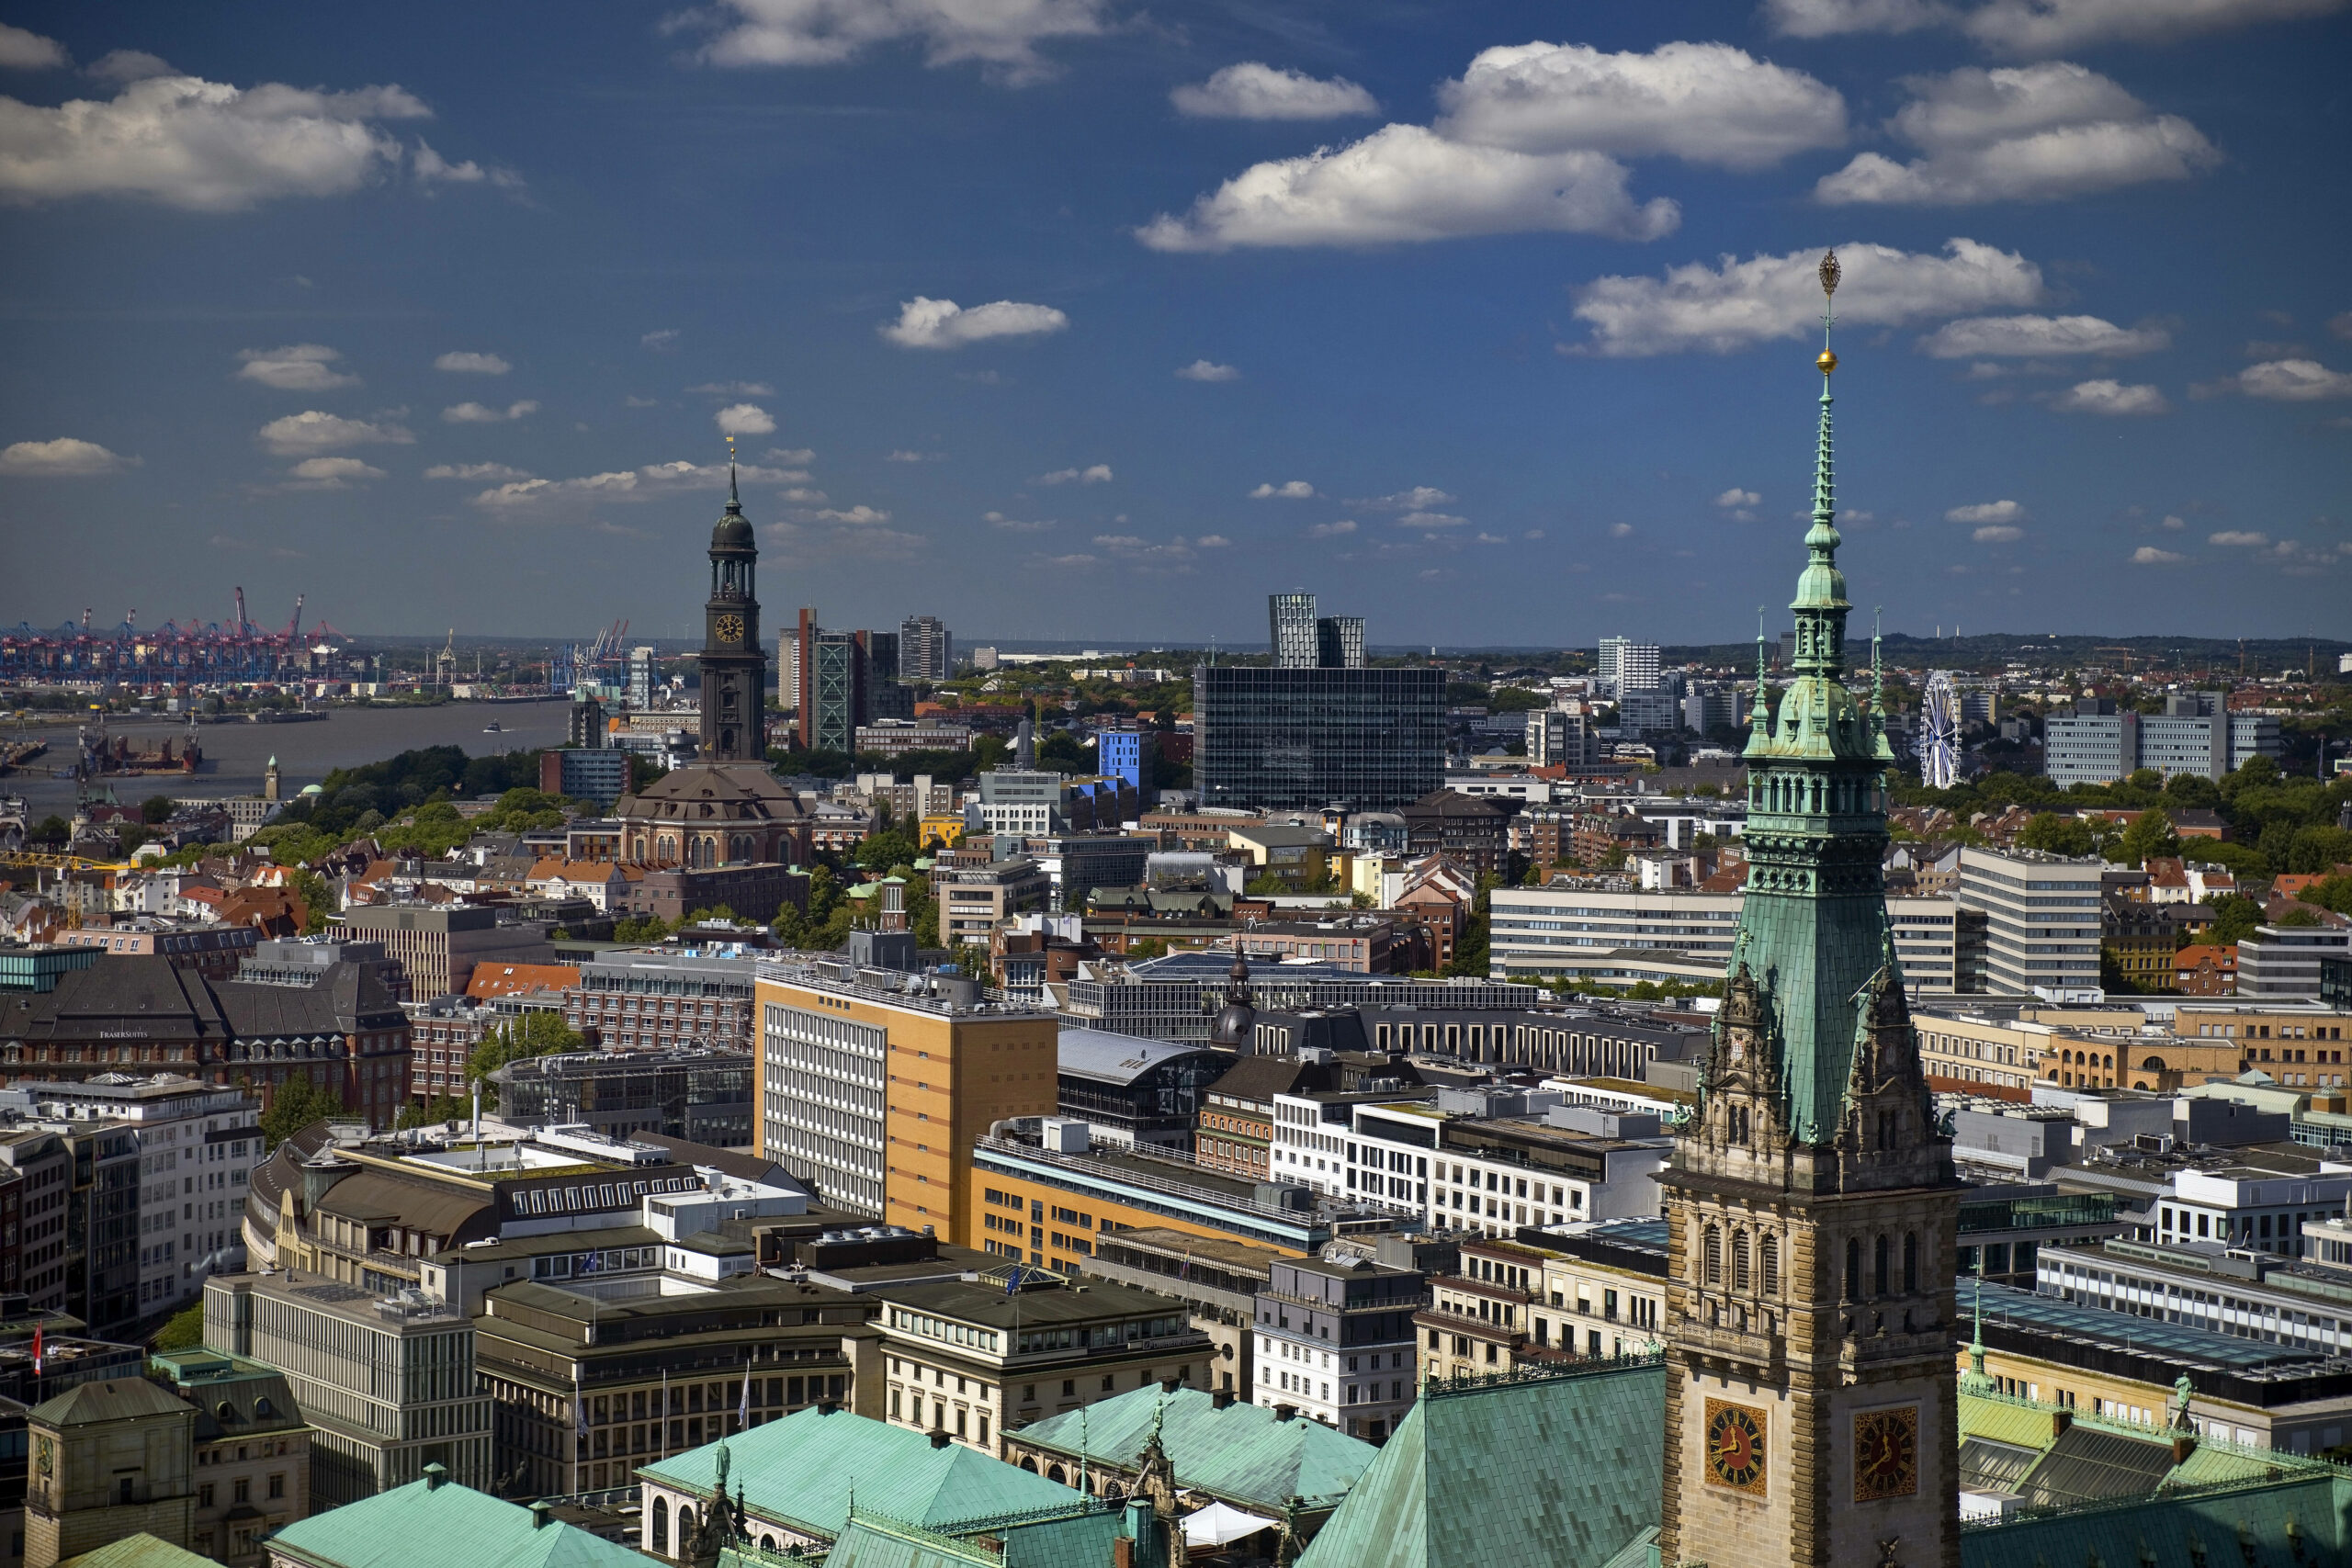 Stadtansicht von Hamburg von oben mit dem Hamburger Rathaus und dem Michel